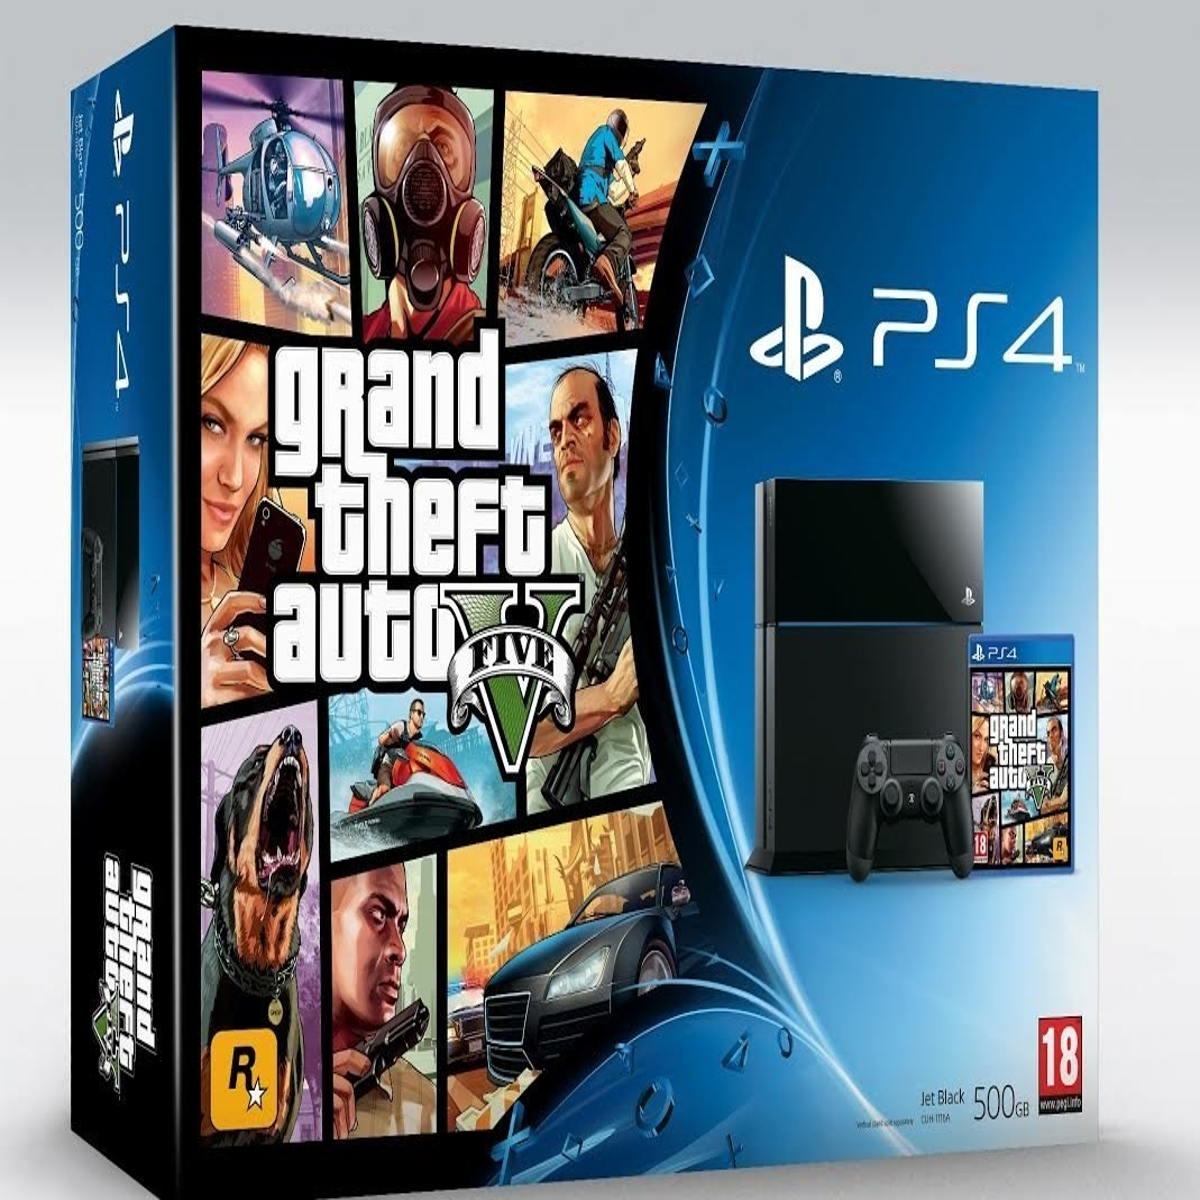 Grand Theft auto v ps4. Sony PLAYSTATION игровая приставка с GTA 5. Sony PLAYSTATION 4 GTA 5. Диск GTA 5 на PLAYSTATION 4. Ps5 маркет